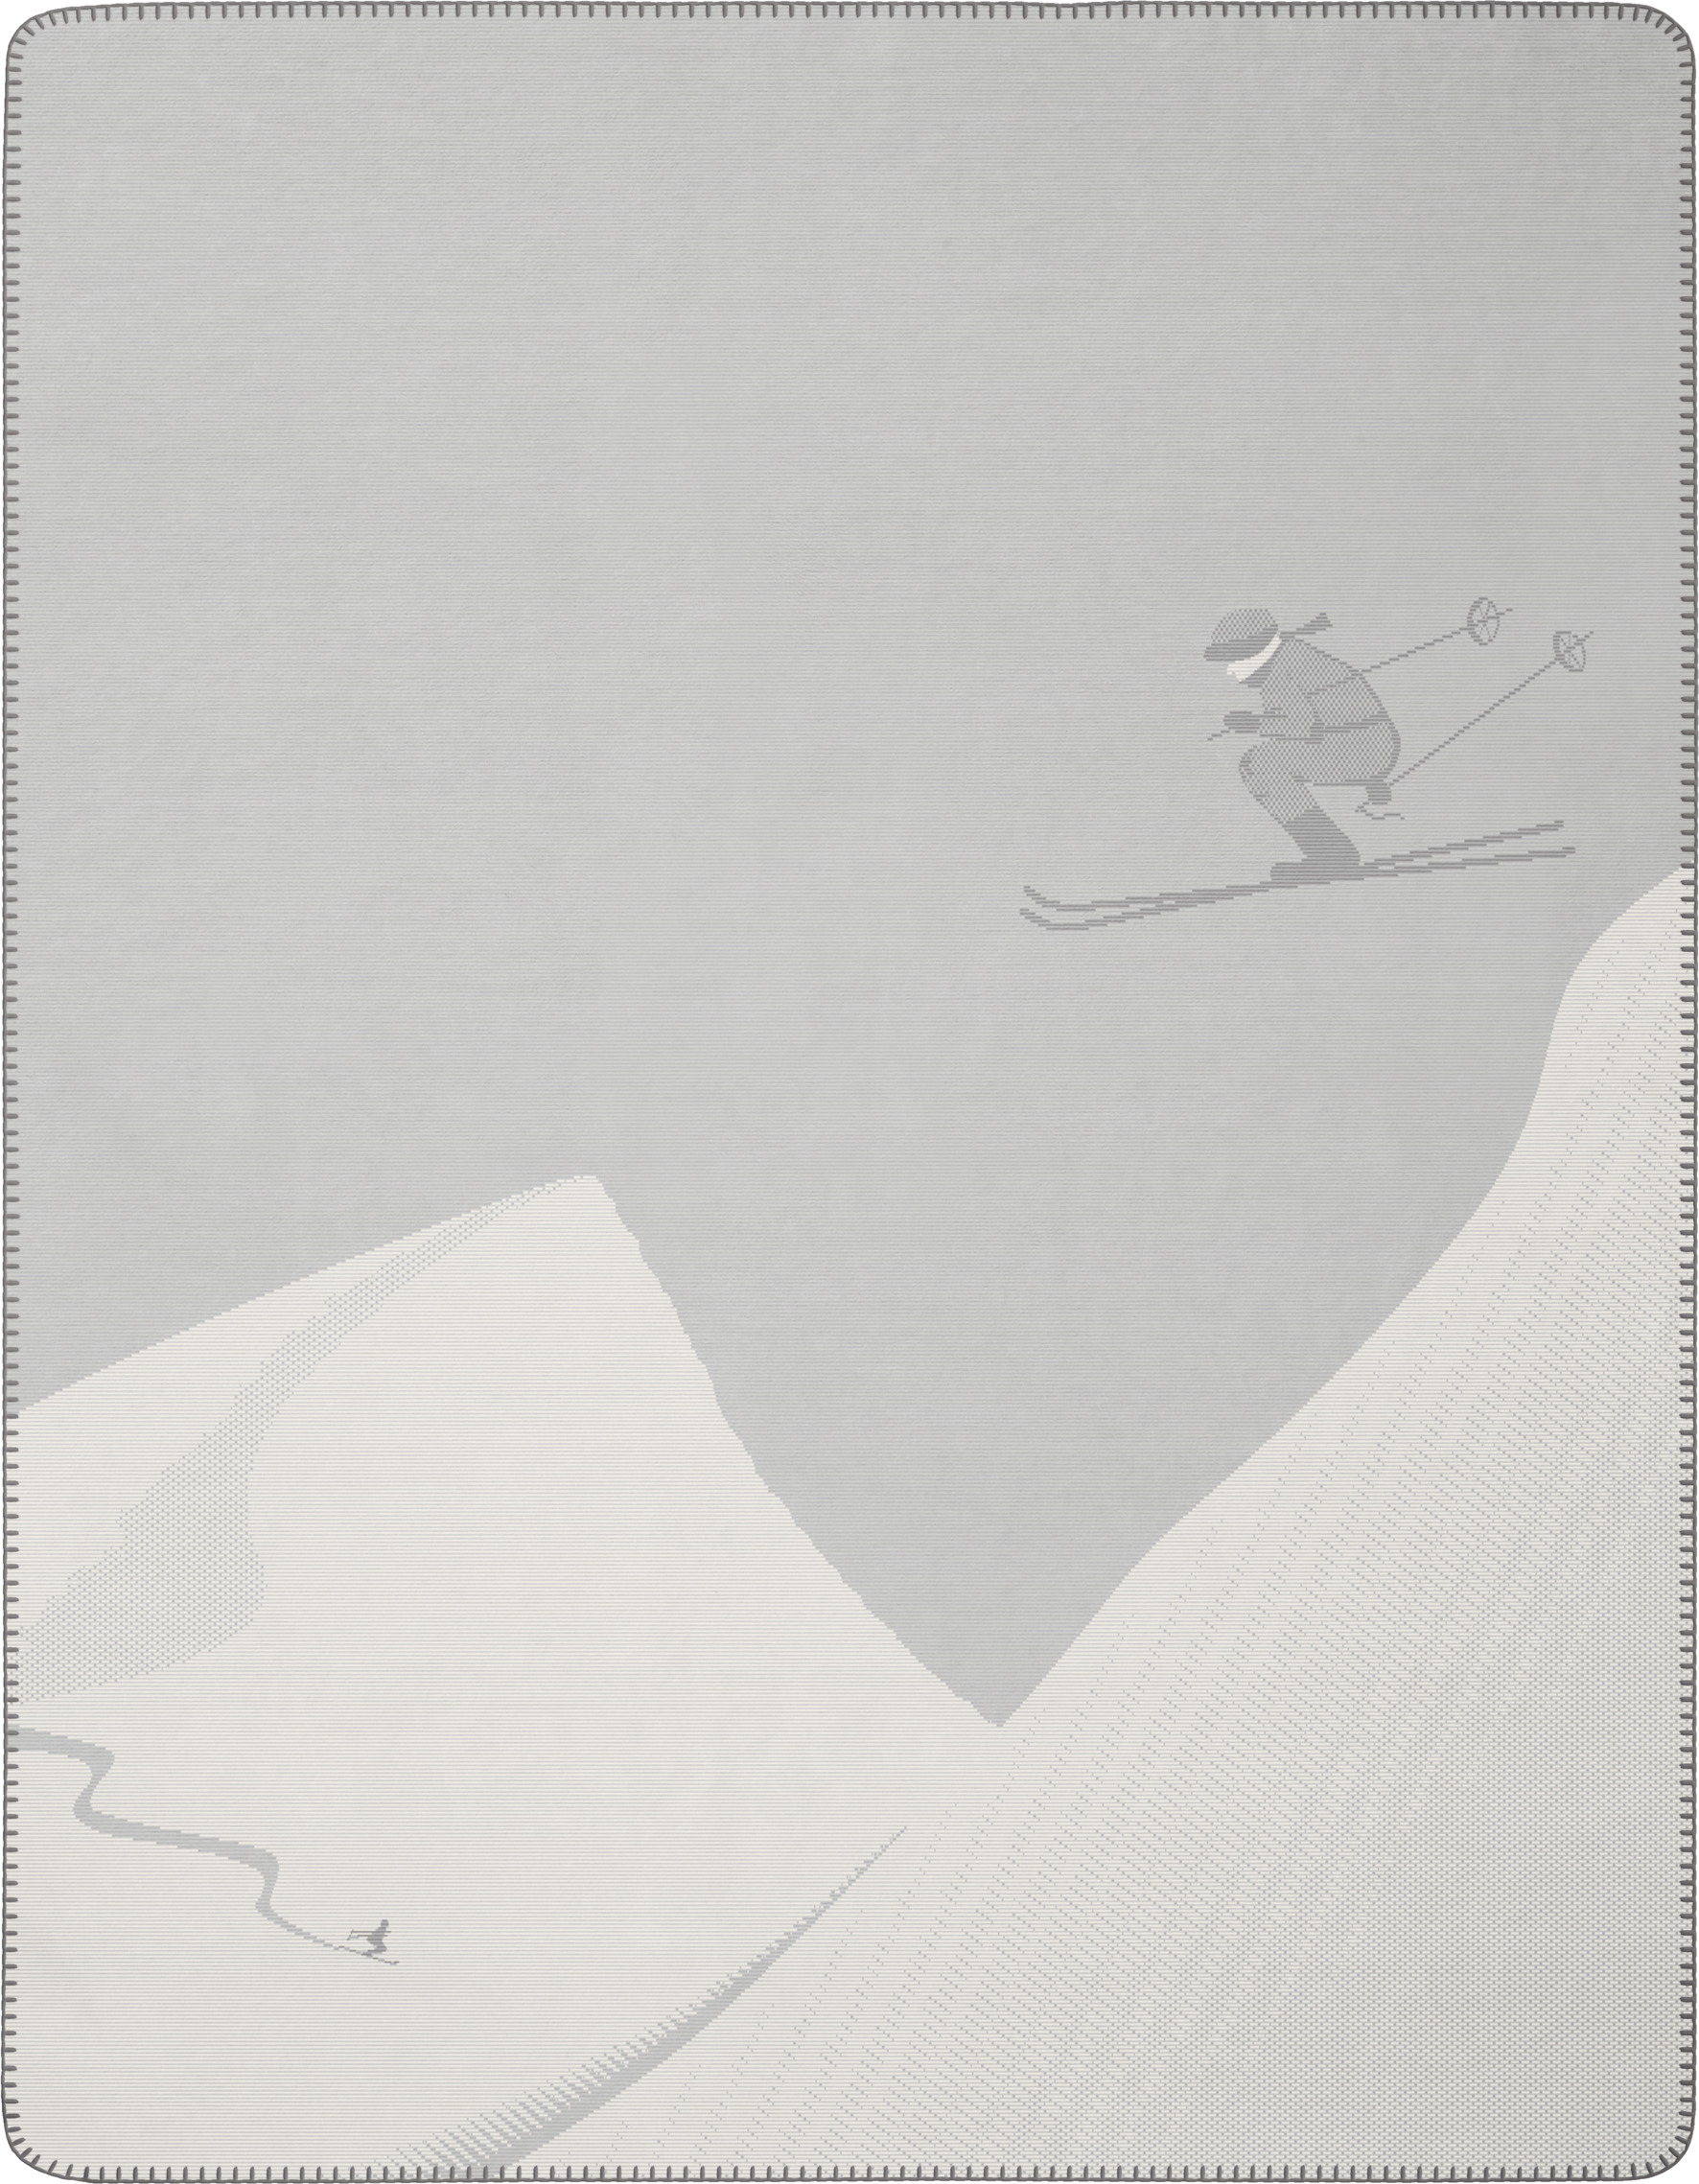 Ski Alpine